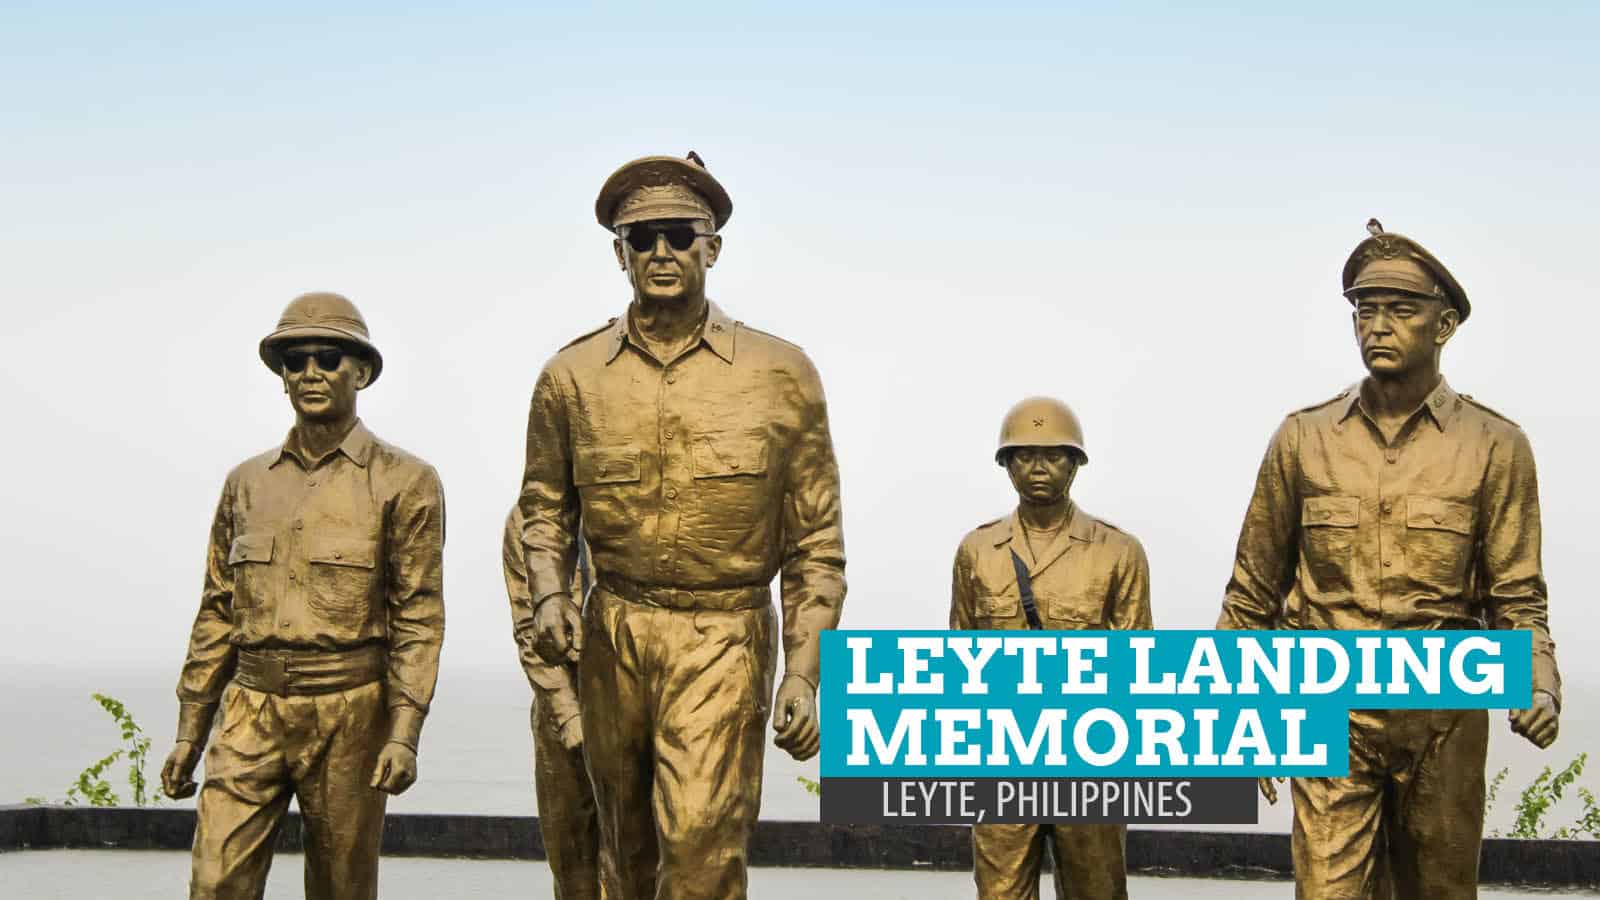 莱特登陆纪念碑:菲律宾莱特岛帕罗的麦克阿瑟公园